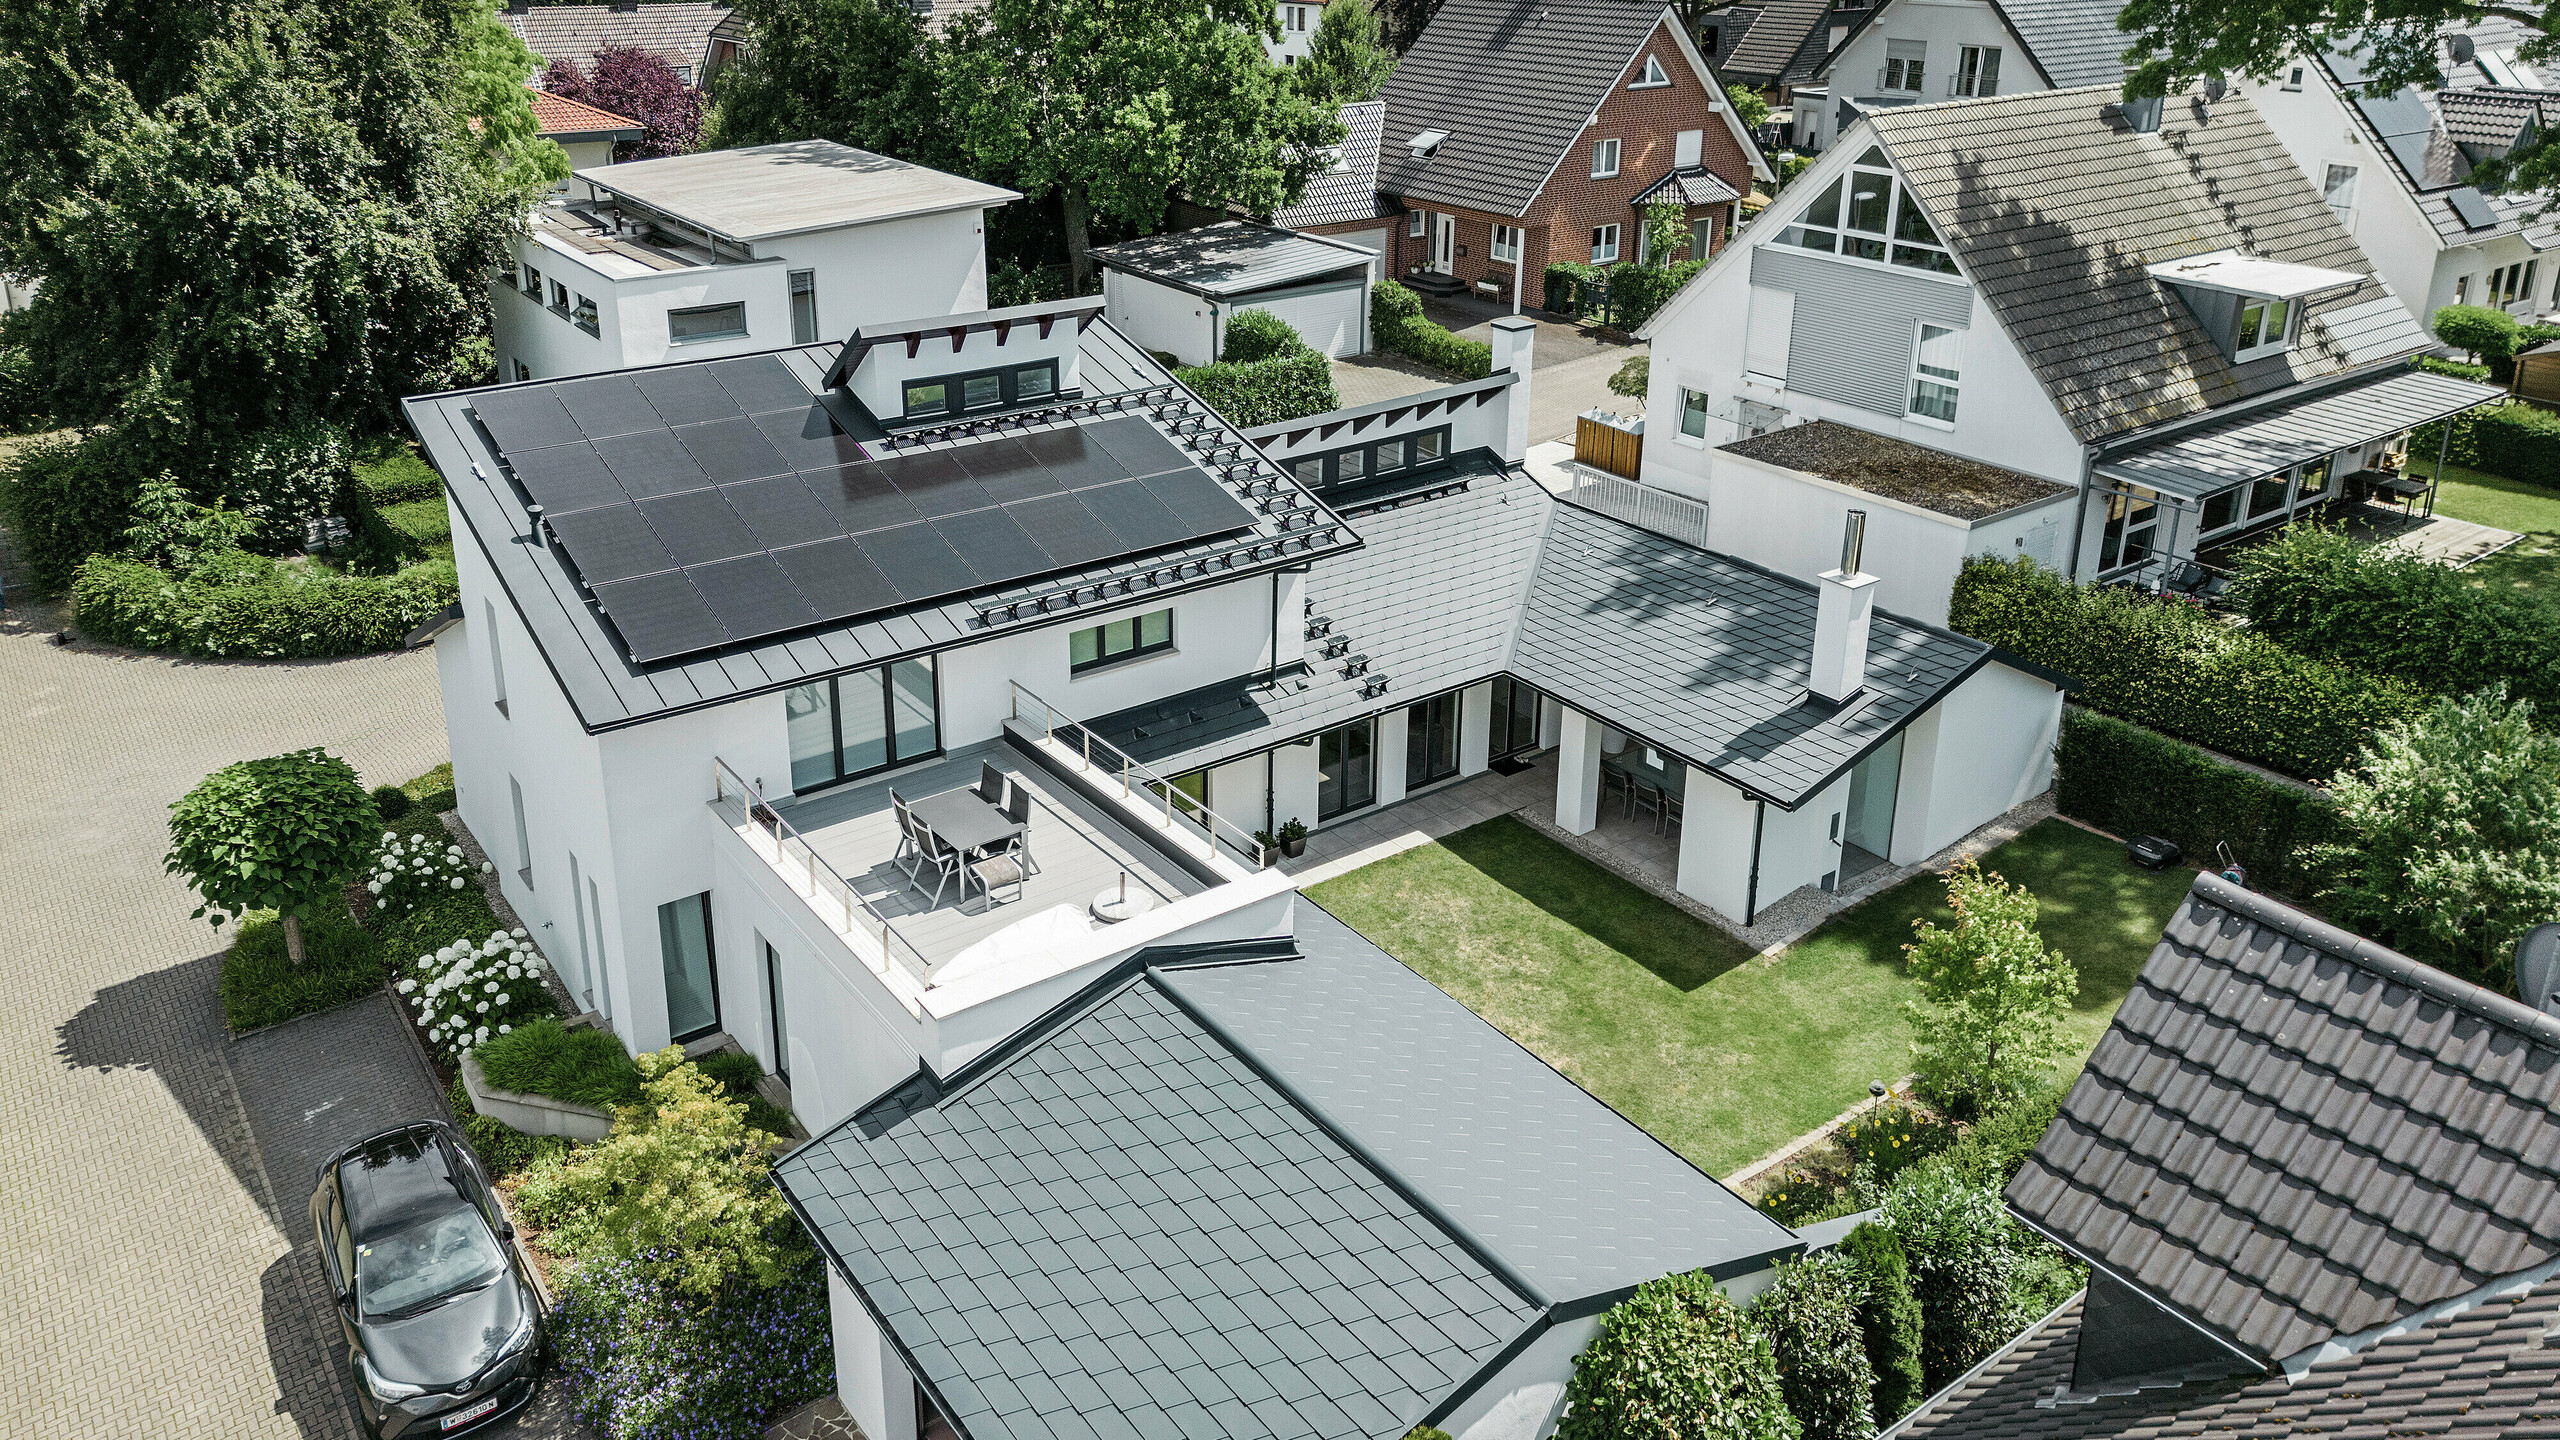  Pogled iz ptičje perspektive na izvanredan krovni krajolik obiteljske kuće u Dortmundu s PREFA krovnom šindrom DS.19 i PREFALZ u boji P.10 antracit i velikim PV sustavom